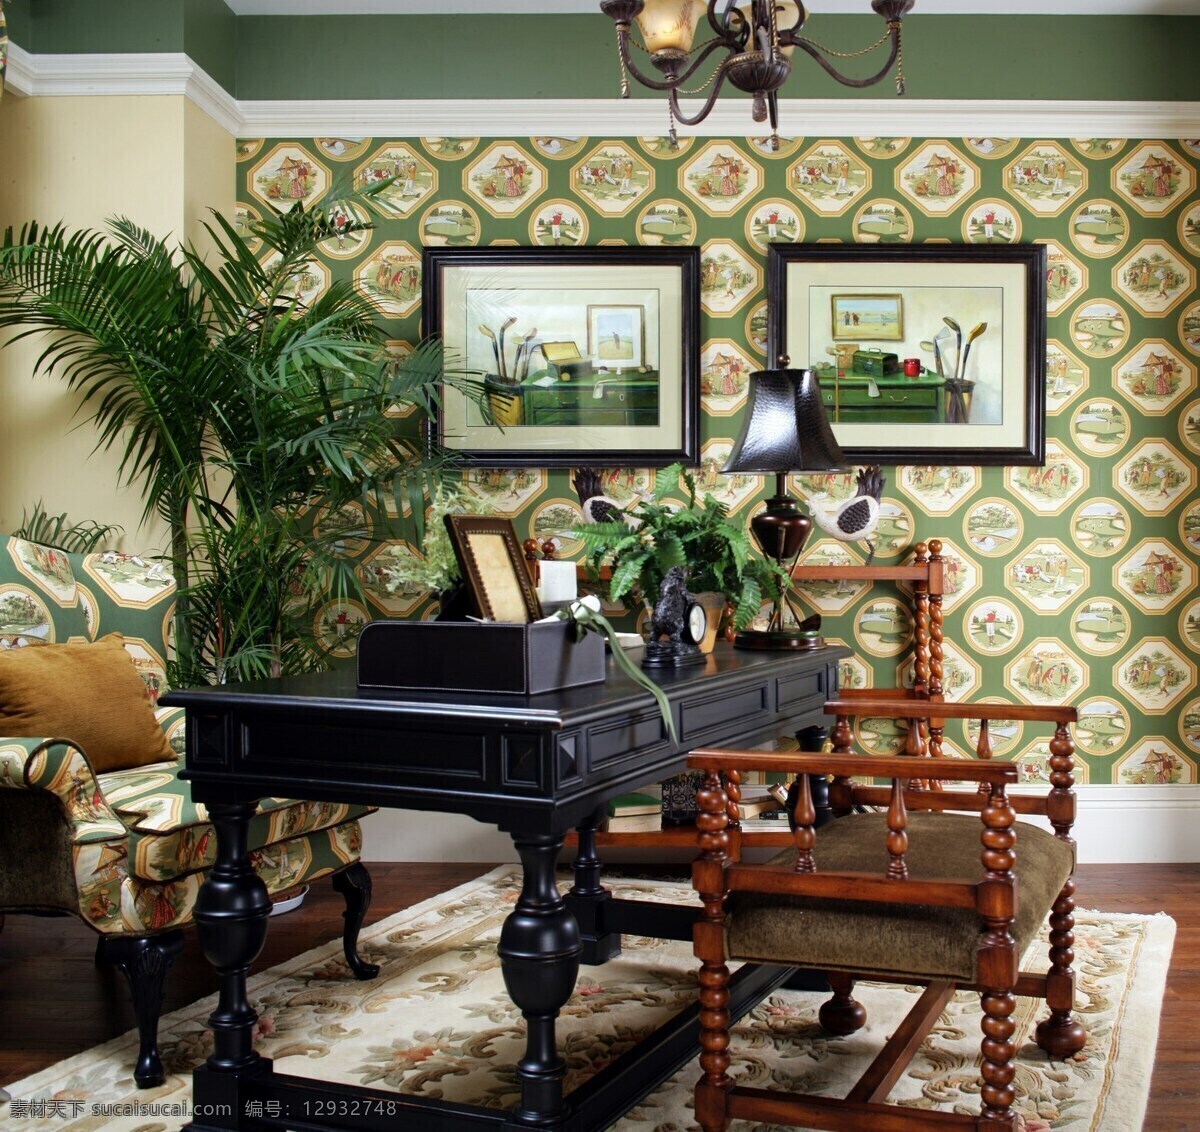 自然 素雅 美式 书房 效果图 布艺沙发 黑色书桌 绿植 木制座椅 印花壁纸 印花地毯